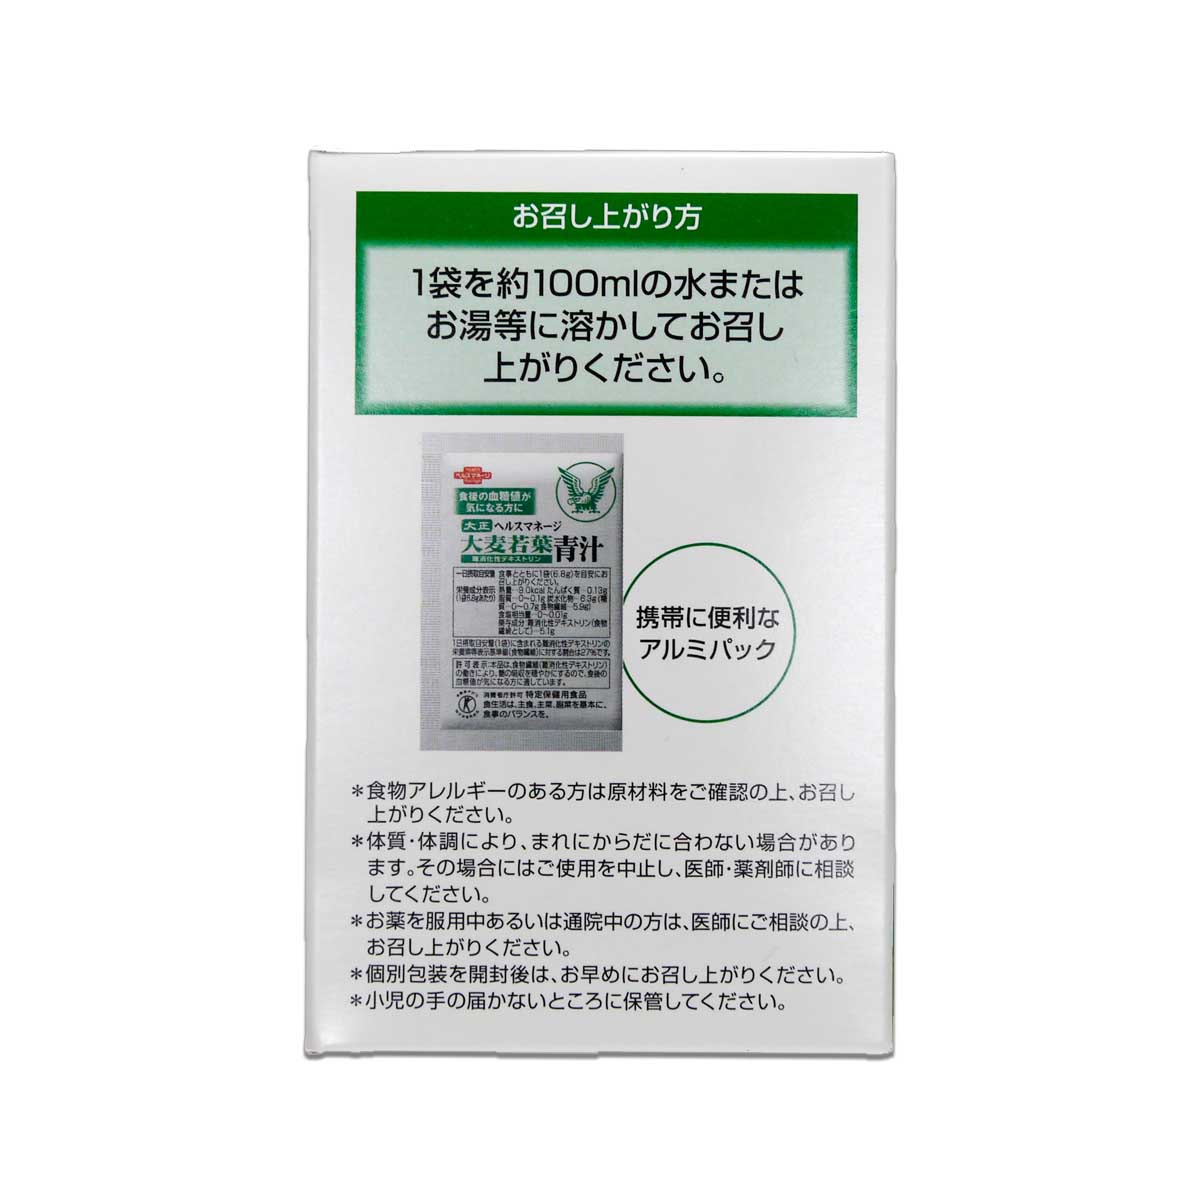 2箱セット 】 大正製薬 ヘルスマネージ大麦若葉青汁 204g ( 6.8g × 30